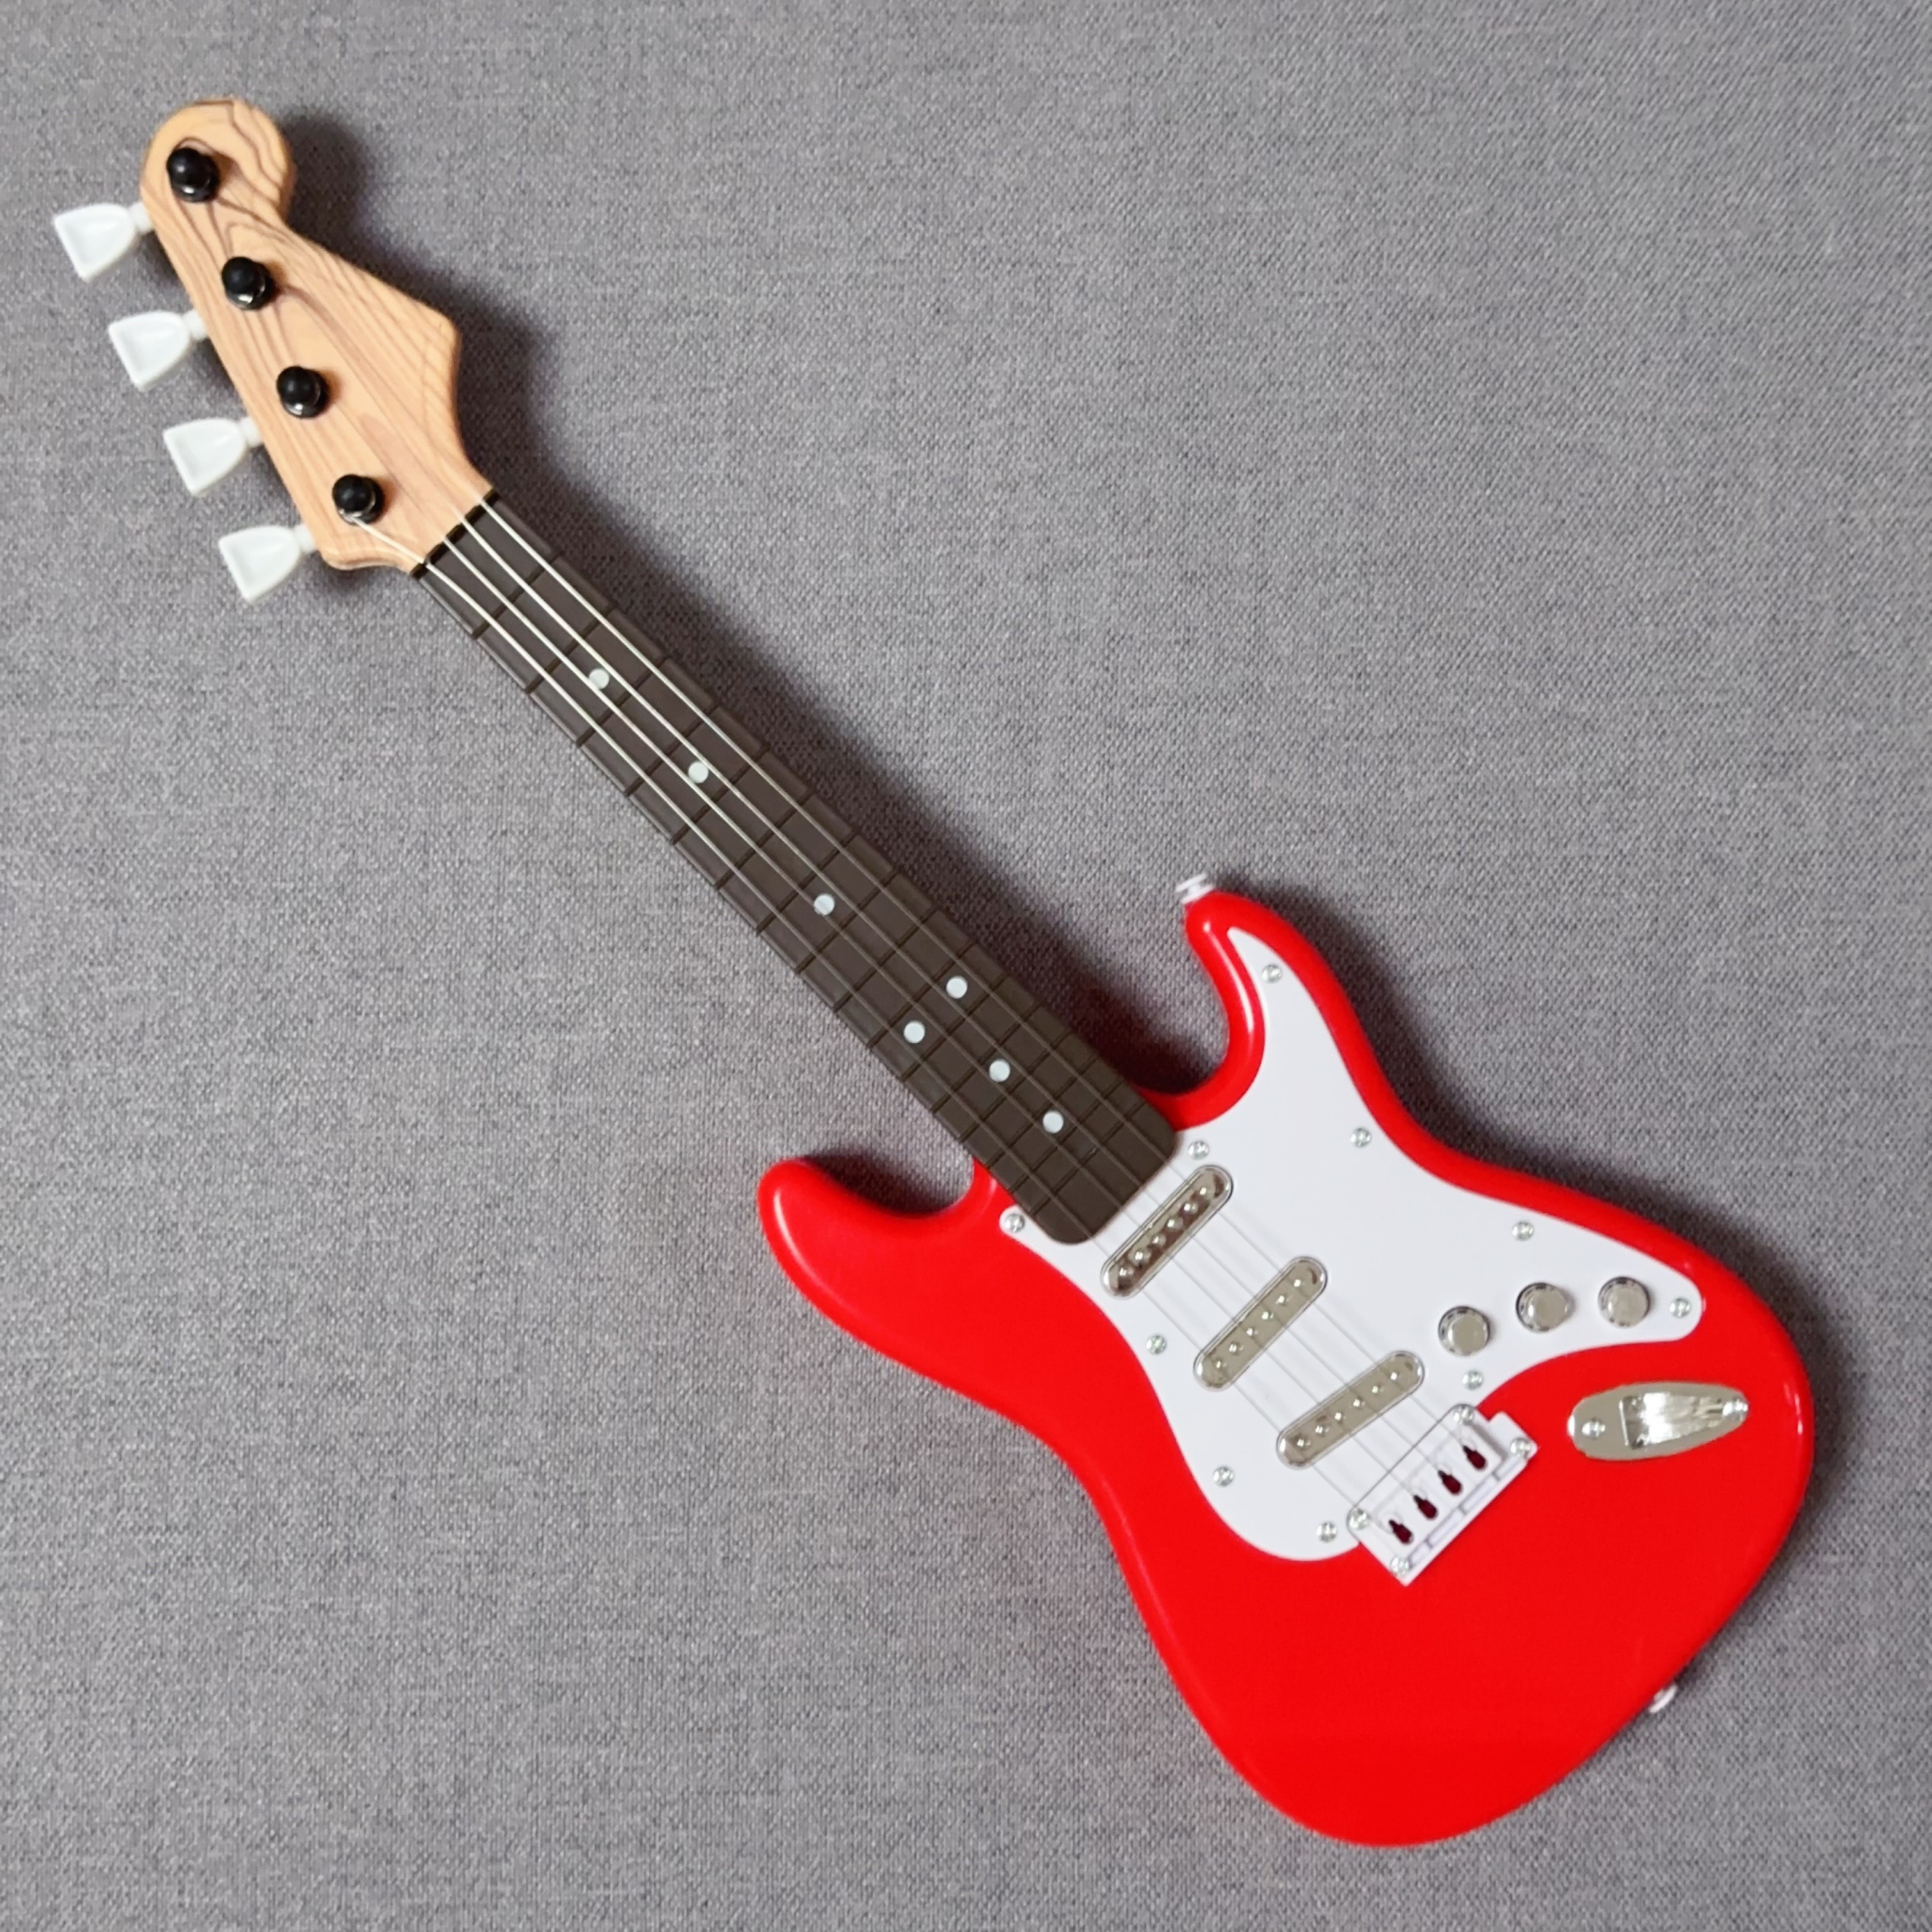 Guitare en jouet rouge - guitares jouet